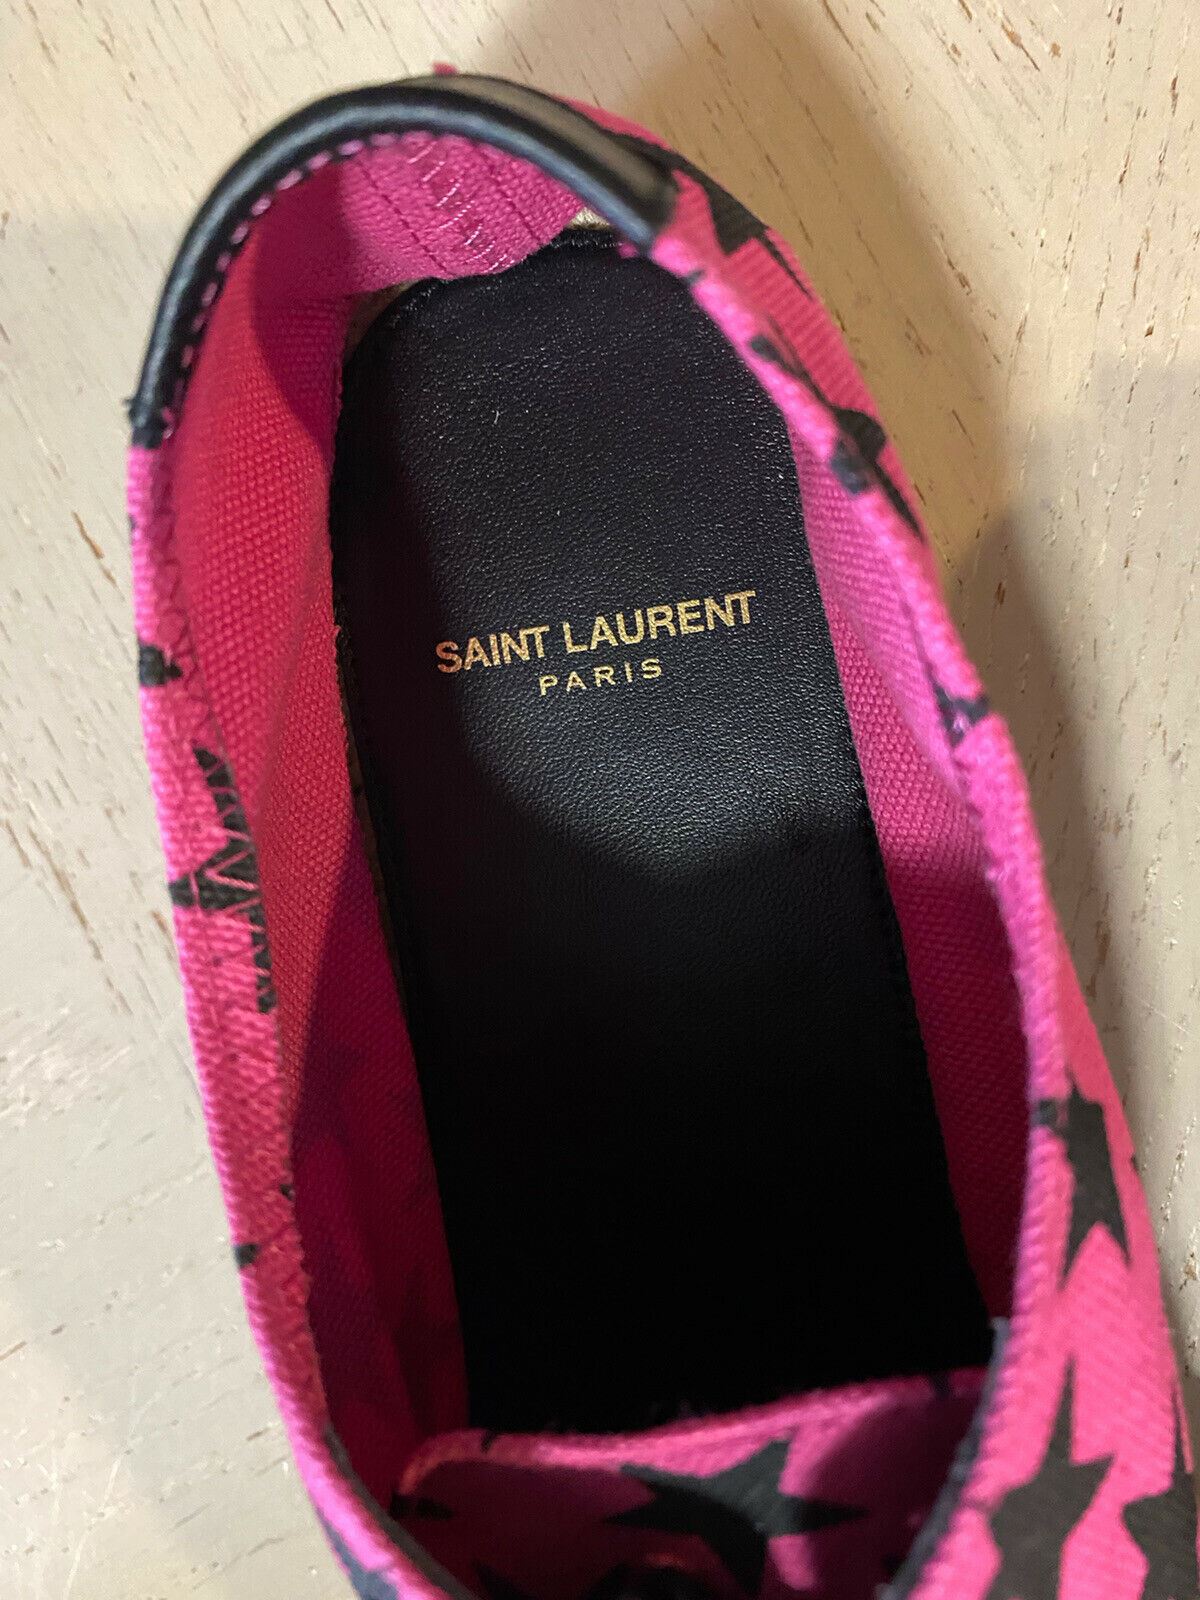 NIB Saint Laurent Damen Espadrille-Schuhe mit Sternenmuster, Rot/Schwarz, 7,5 US/37,5 Eu